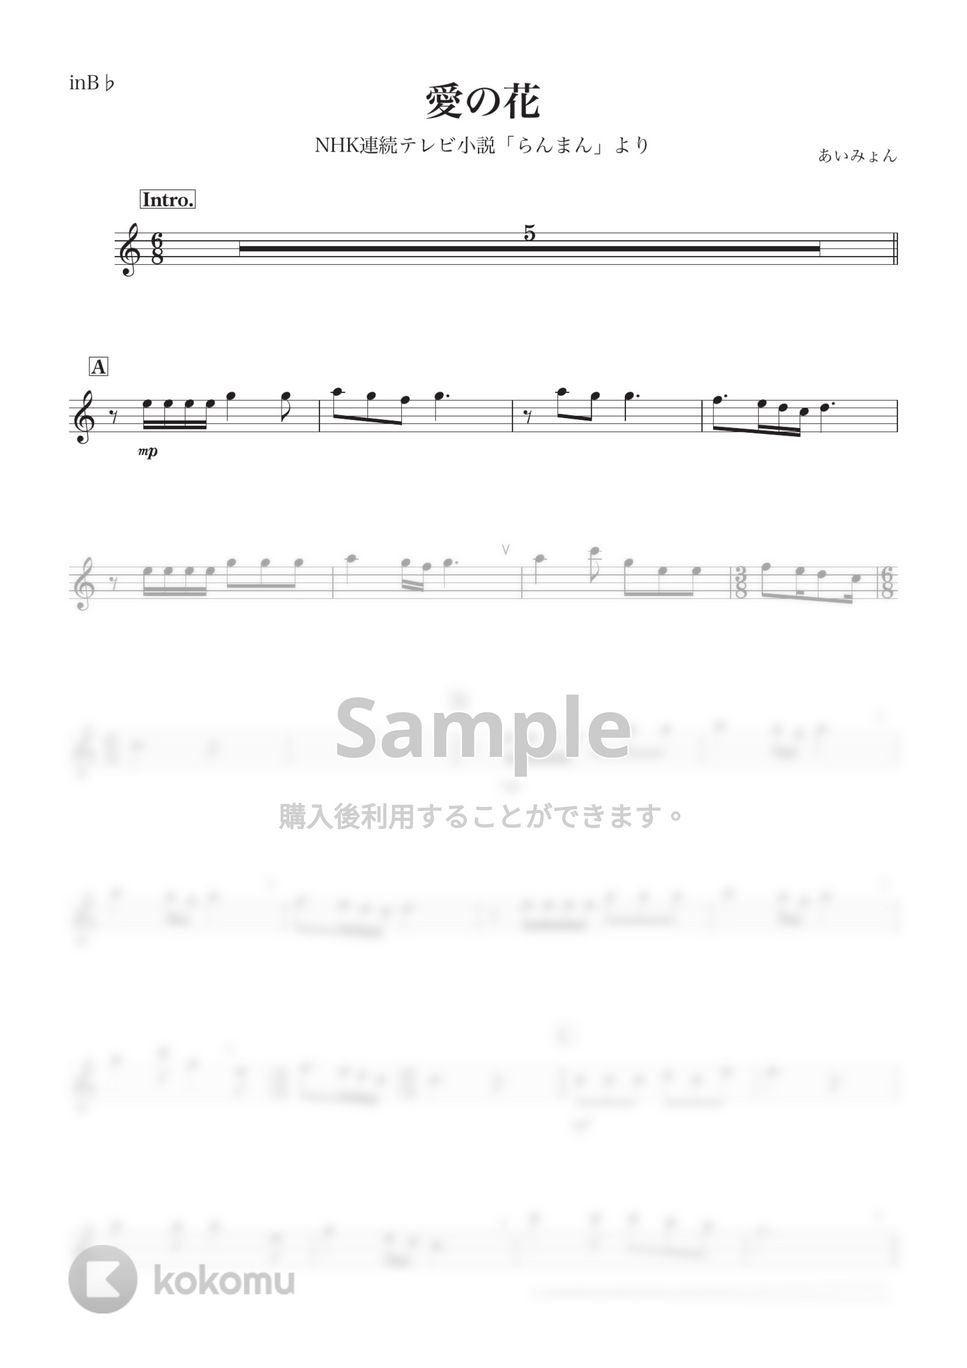 あいみょん - 【らんまん】愛の花 (B♭) by kanamusic